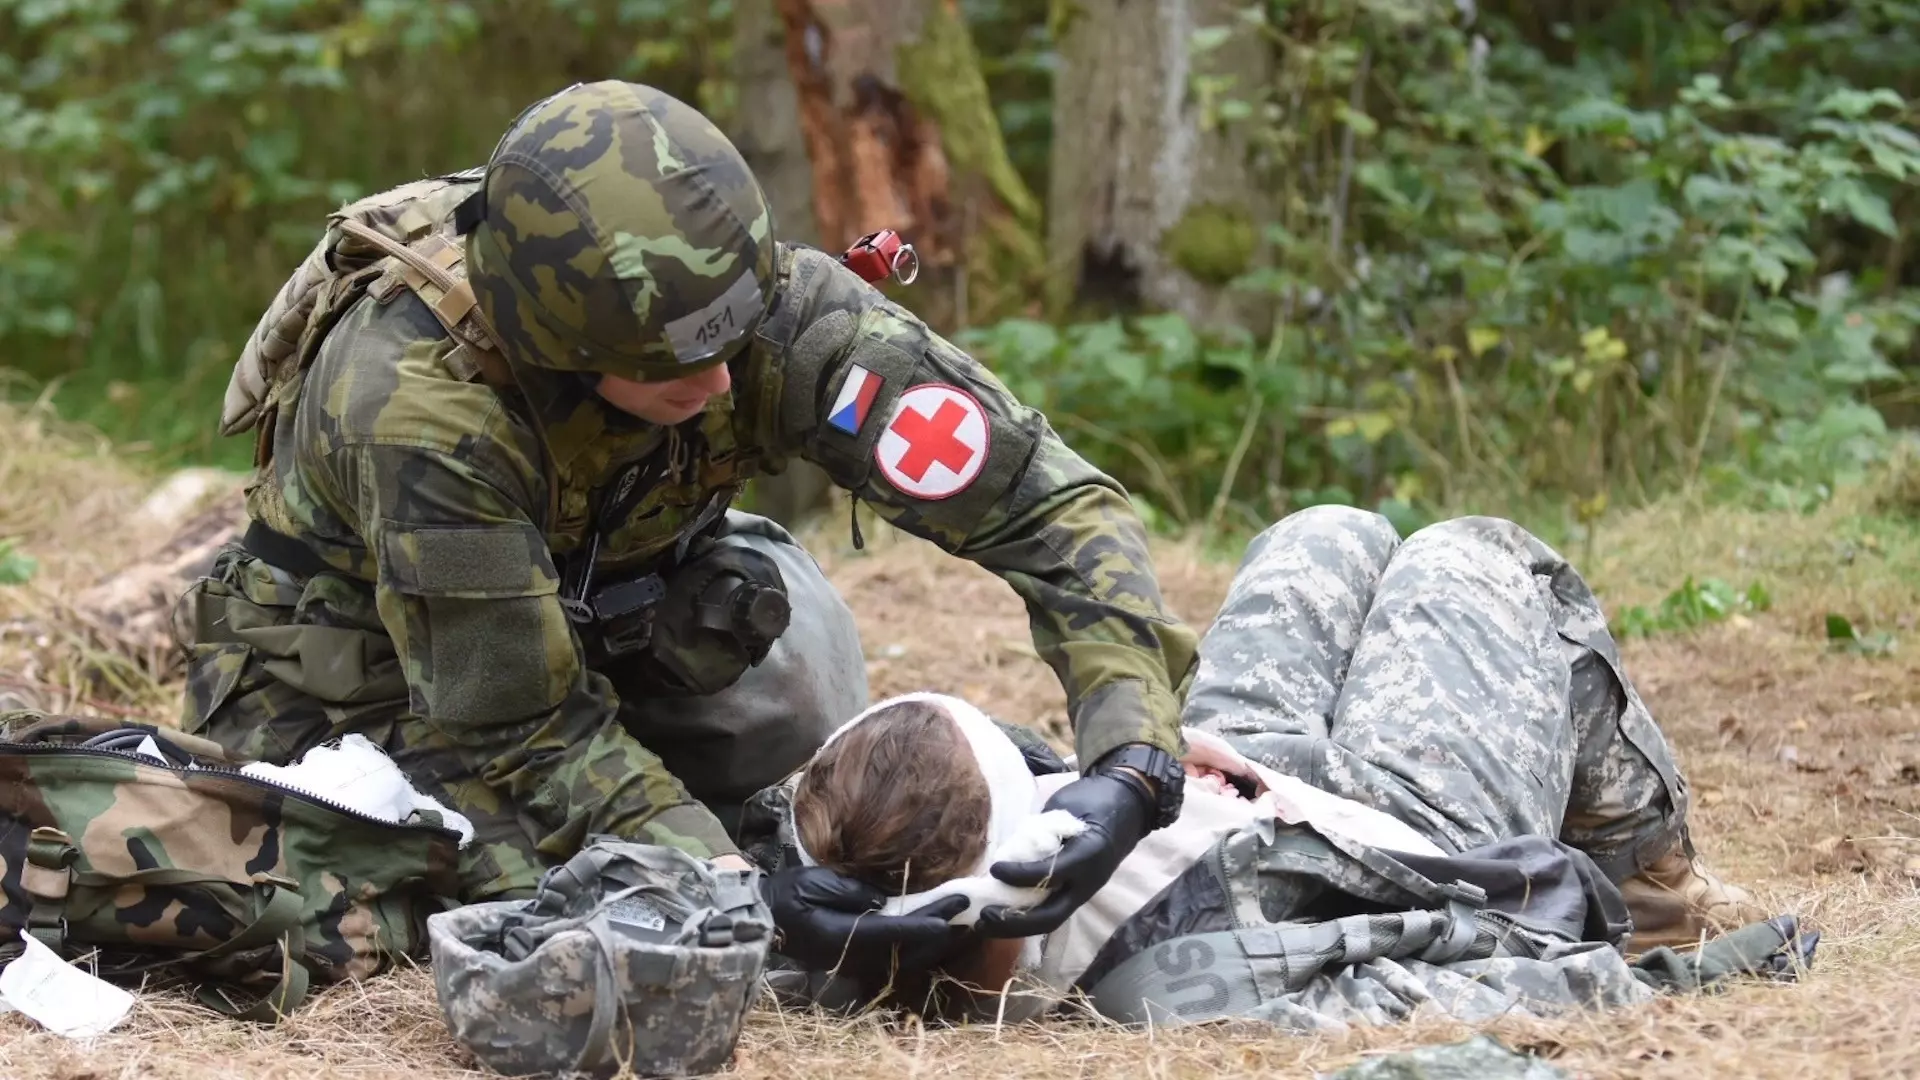 Работа врача в военно-полевых условиях отличается от гражданской медицины